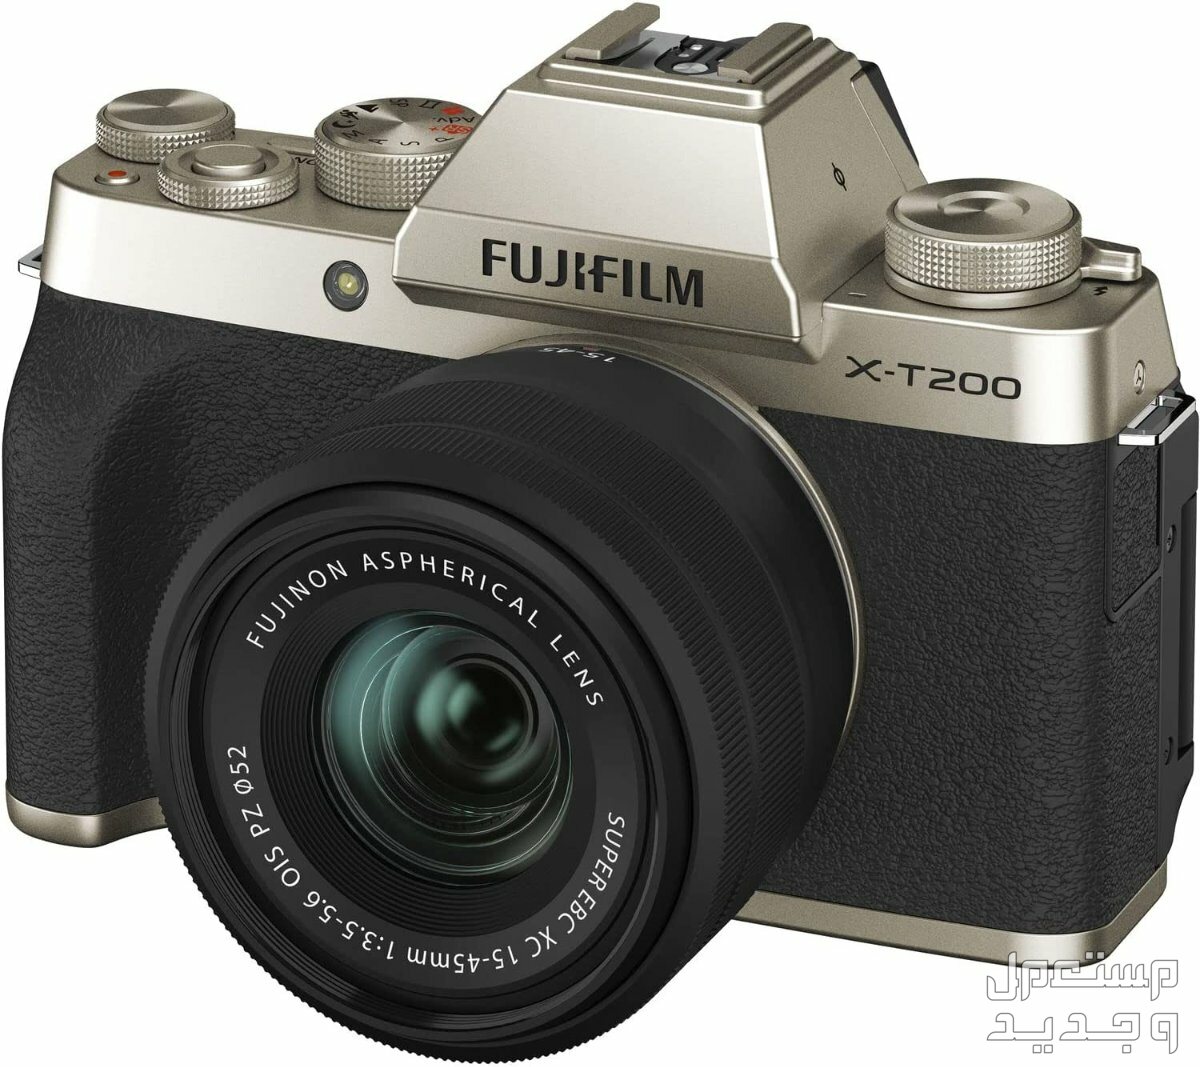 10 كاميرات تصوير ماركات عالمية بأسعار رخيصة في ليبيا كاميرا Fujifilm X-T200